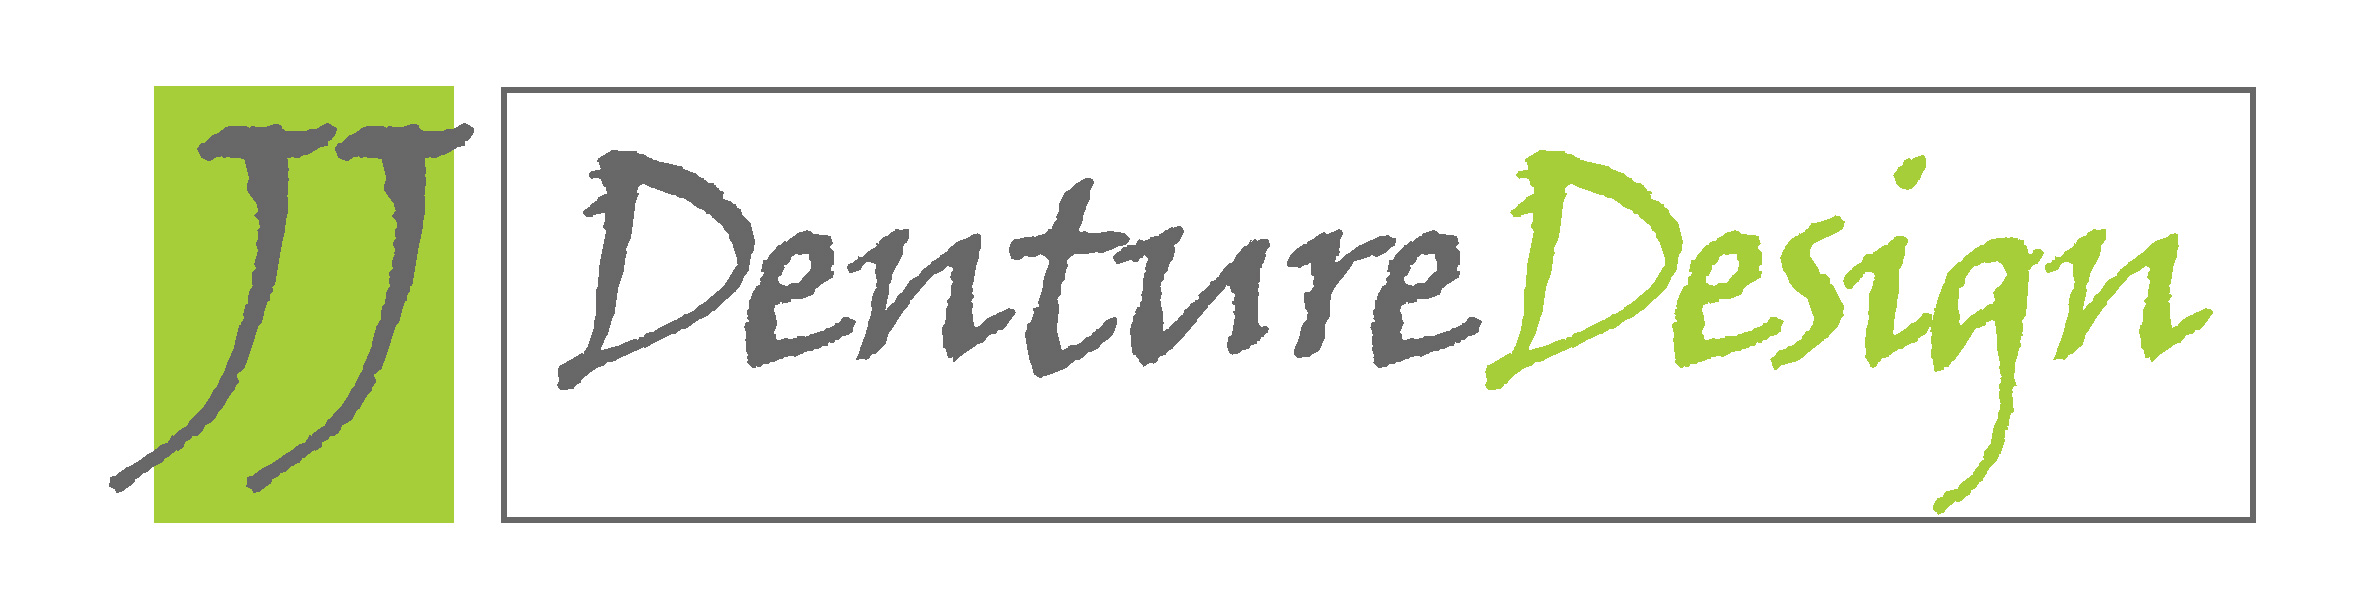 Jj Denture Design - Logo